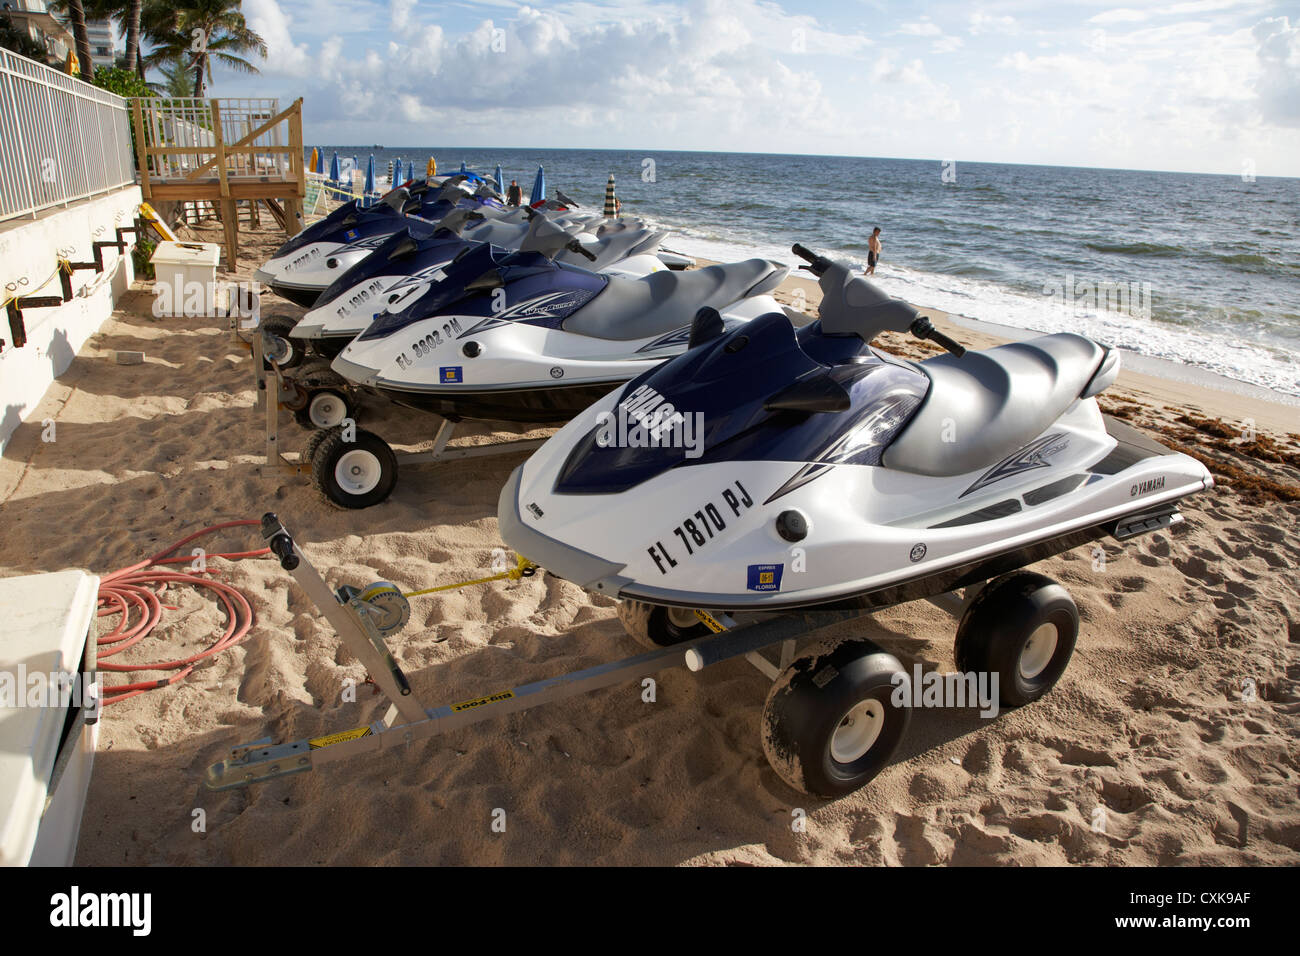 Yamaha waverunner idrogetti per noleggiare sulla spiaggia di Fort Lauderdale Florida usa Foto Stock